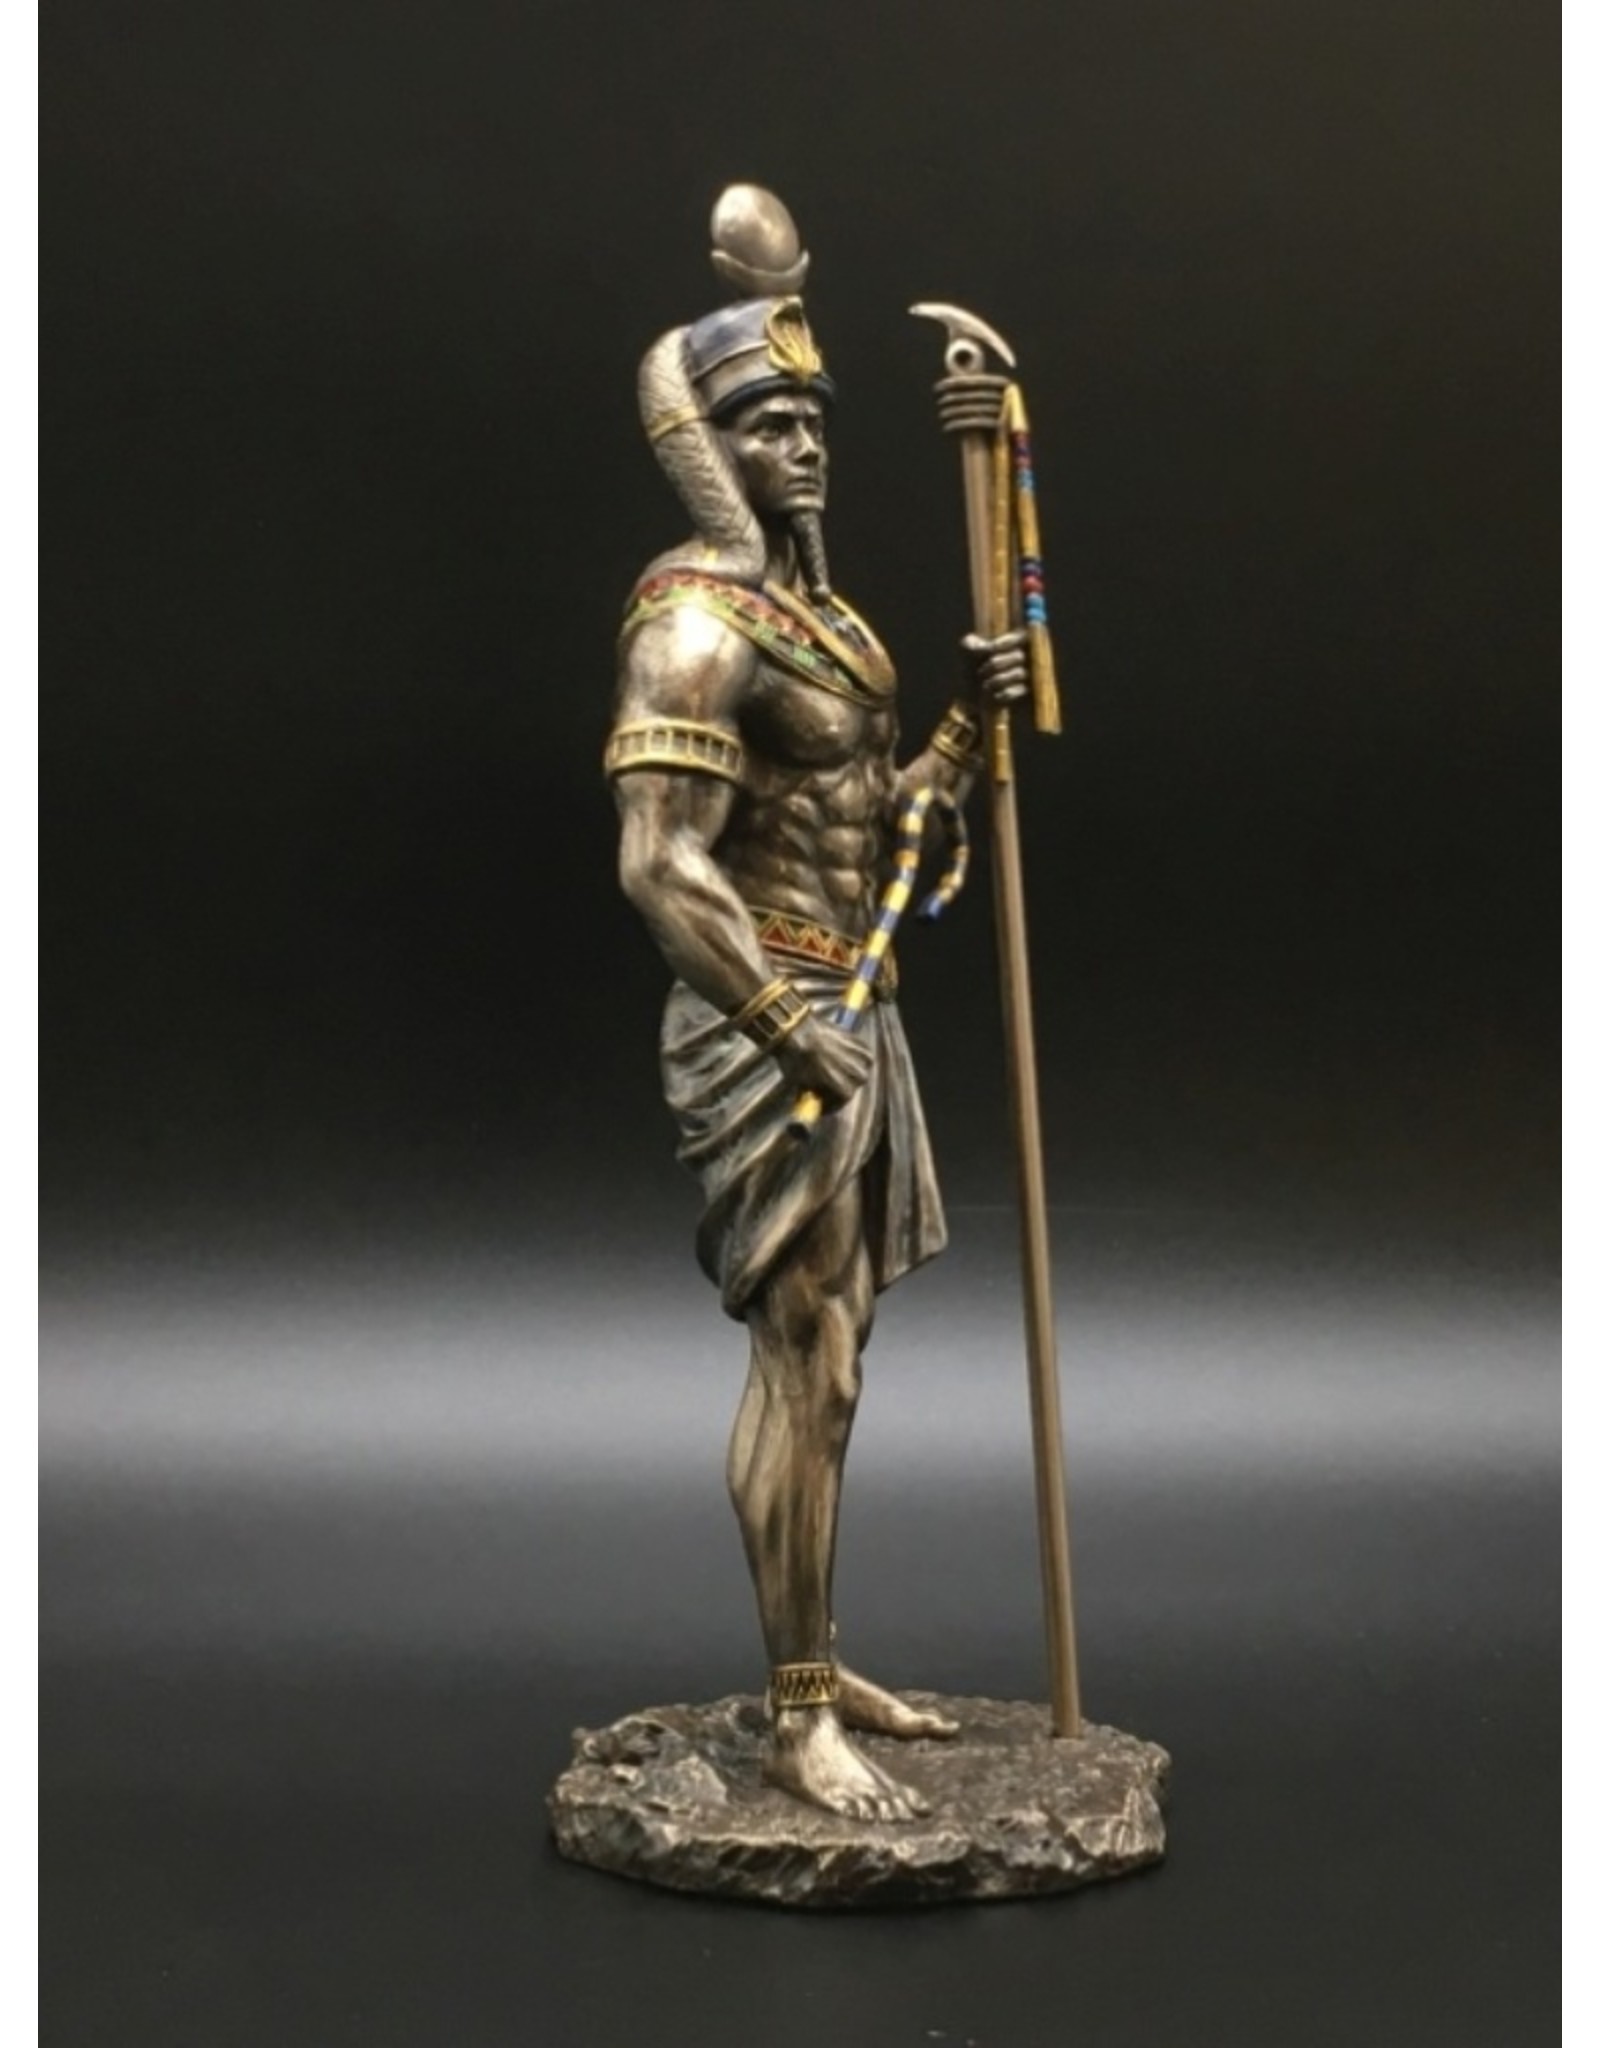 Veronese Design Giftware & Lifestyle - Khonsu Egyptische God van de Maan